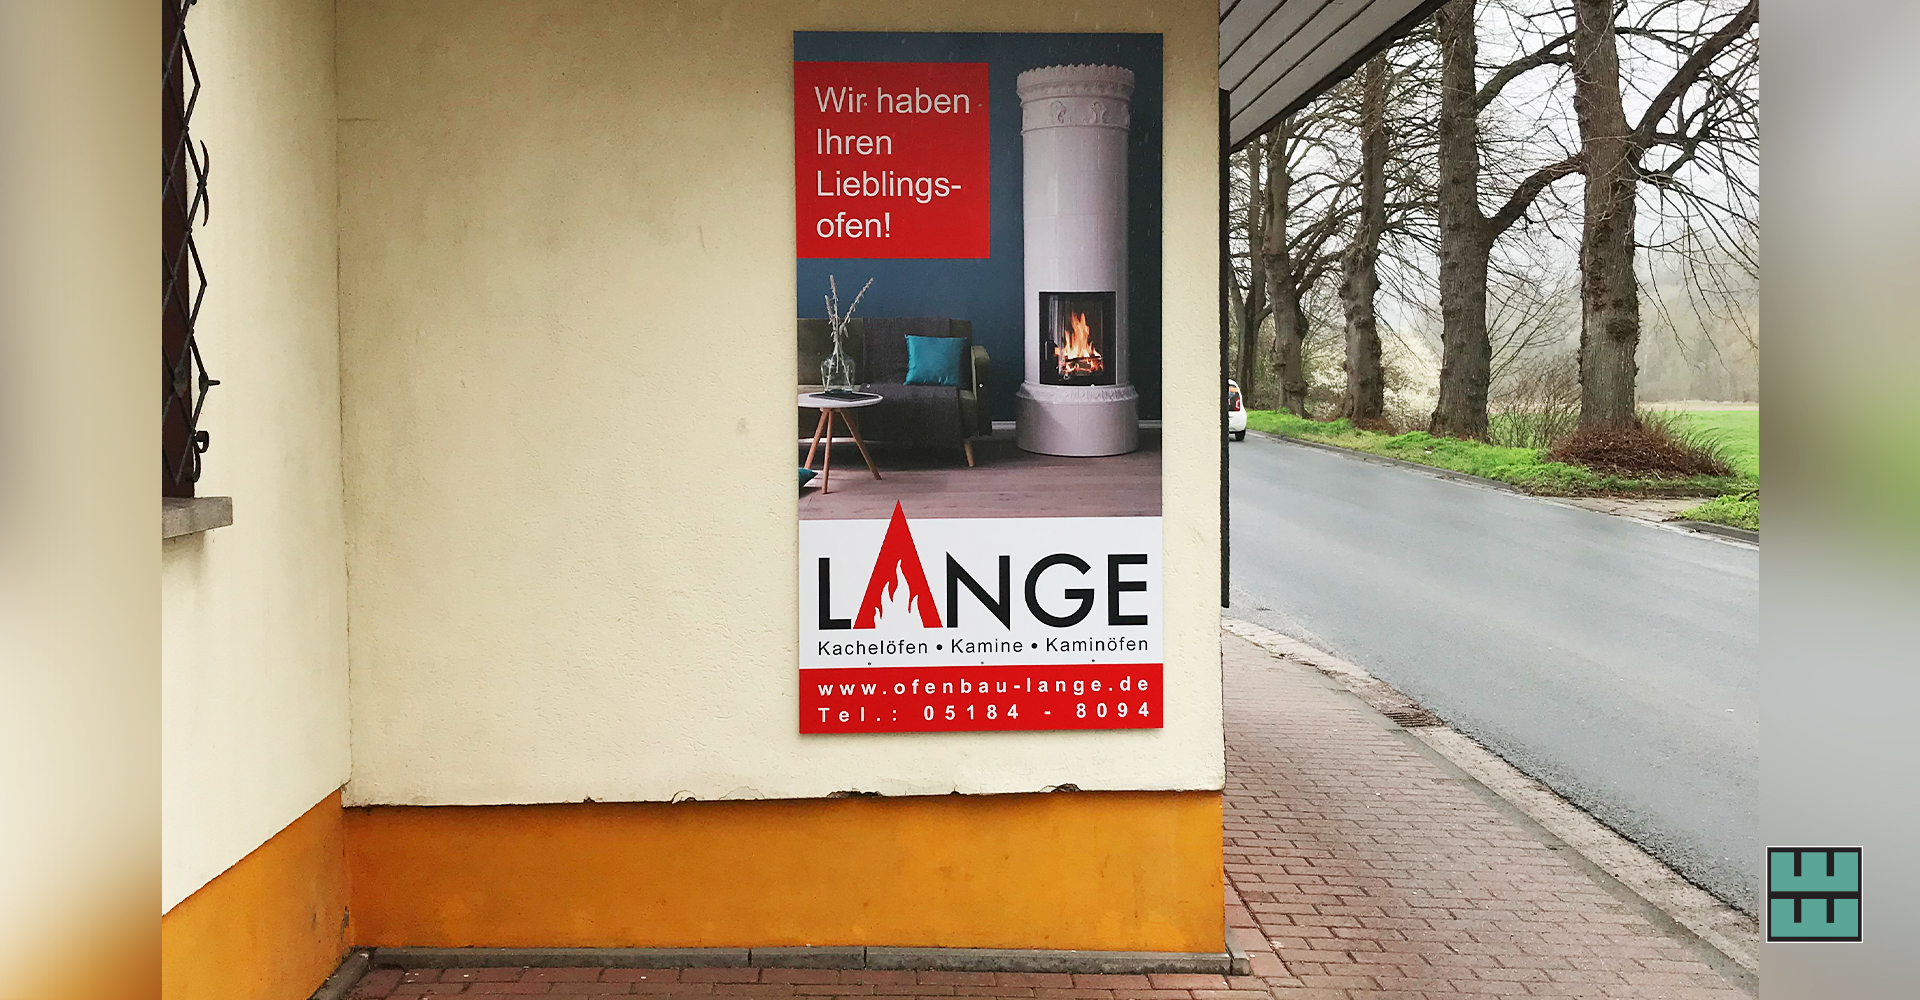 Auch Ofenbau Lange hat neue Schilder erhalten. Weber Werbung hat den Druck sowie die Montage übernommen.